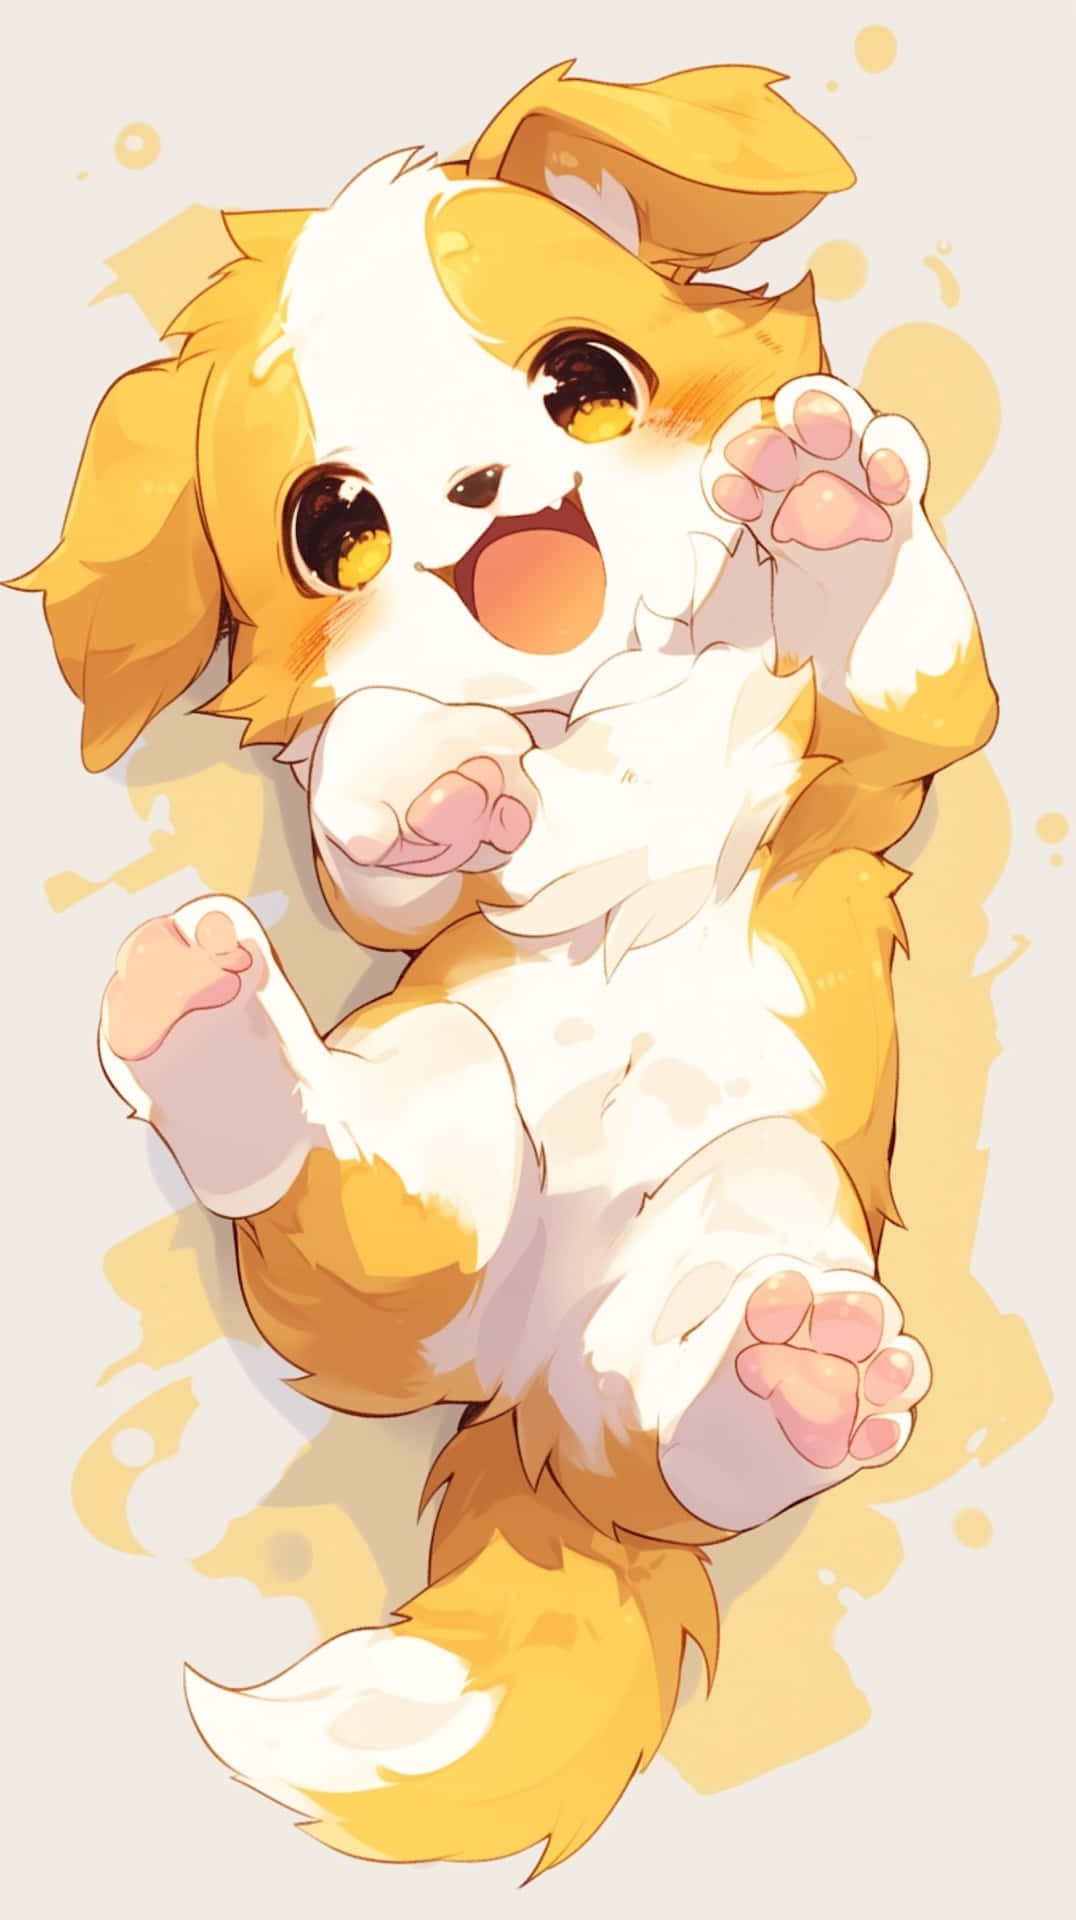 Joyful Anime Puppy Illustration Wallpaper